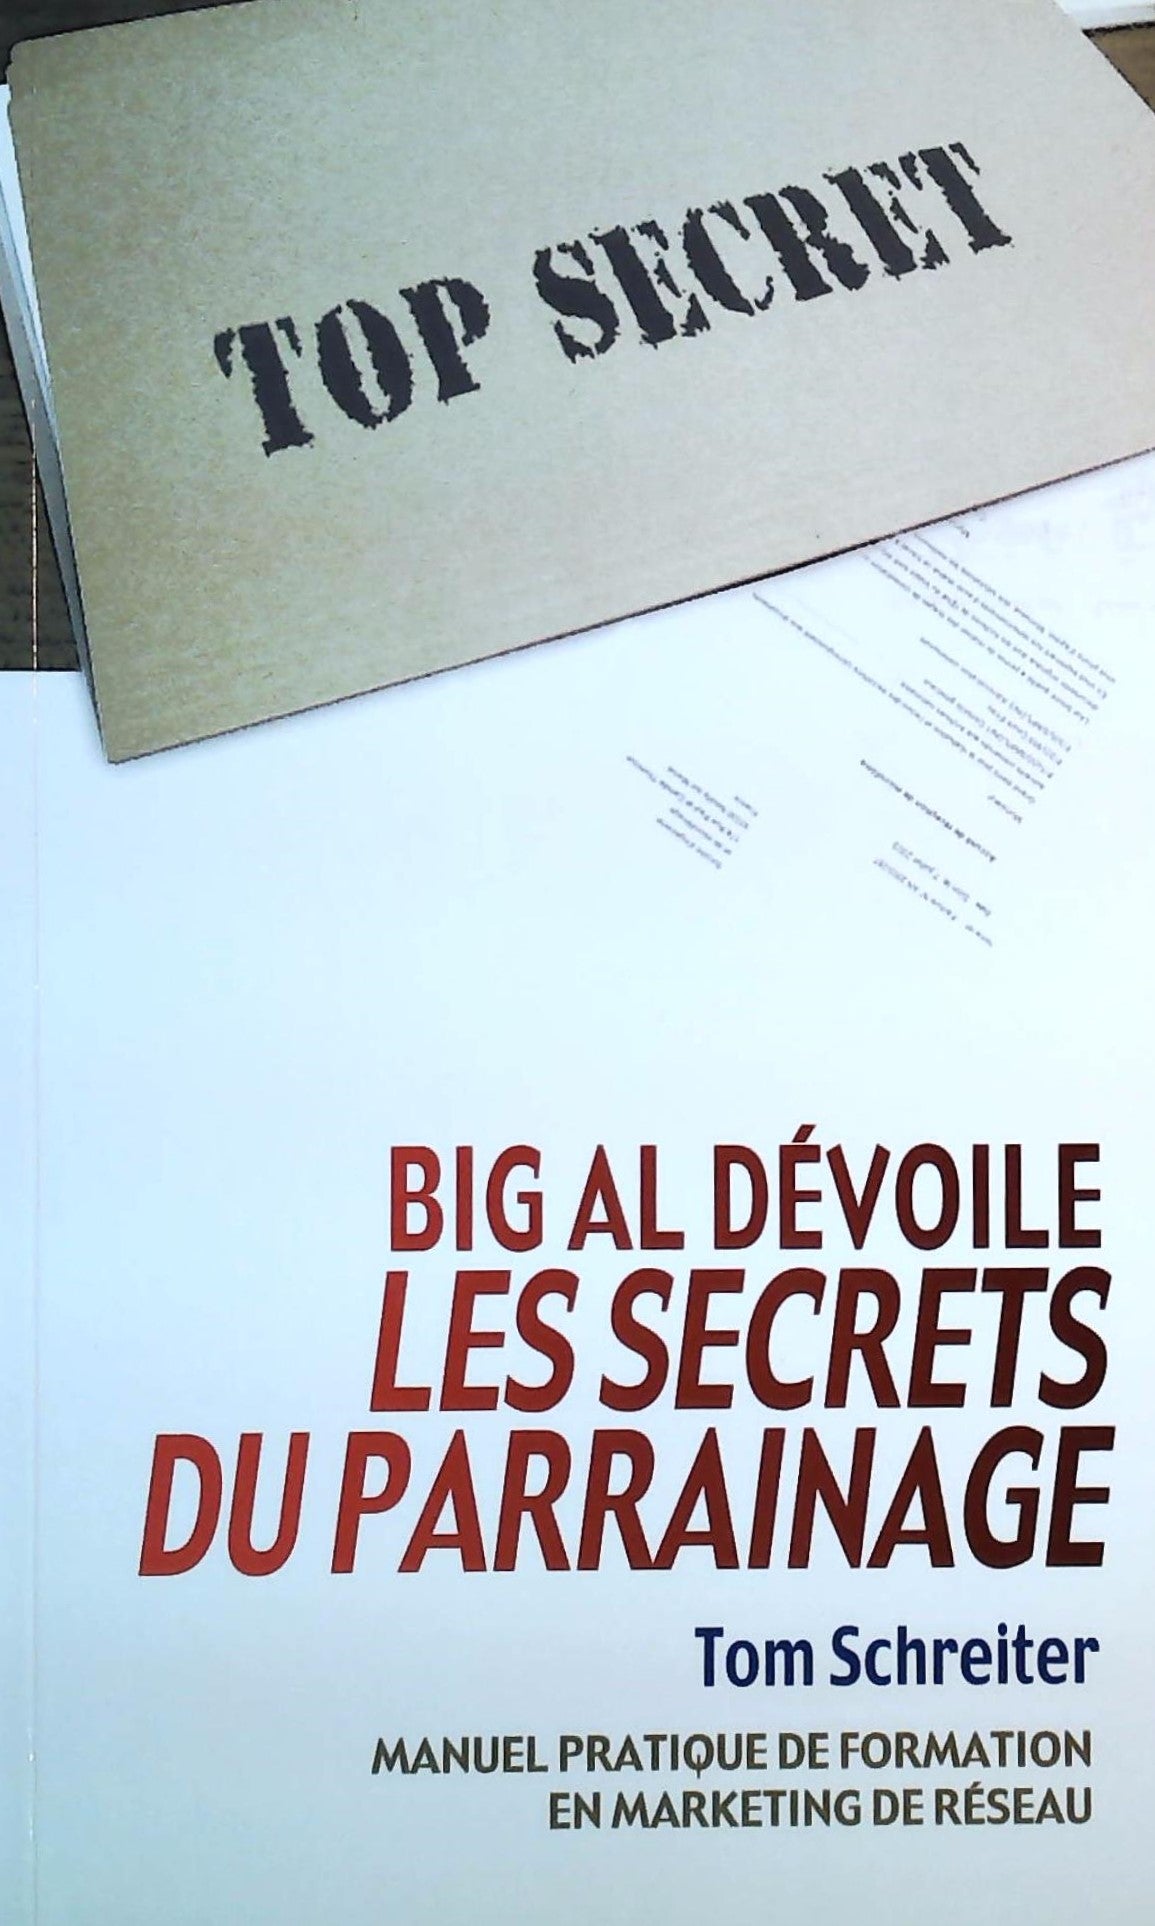 Livre ISBN 2922882101 Big Al Déboile les secrets du parrainage : Manuel pratique de formation en marketing réseau (Tom Schreiter)